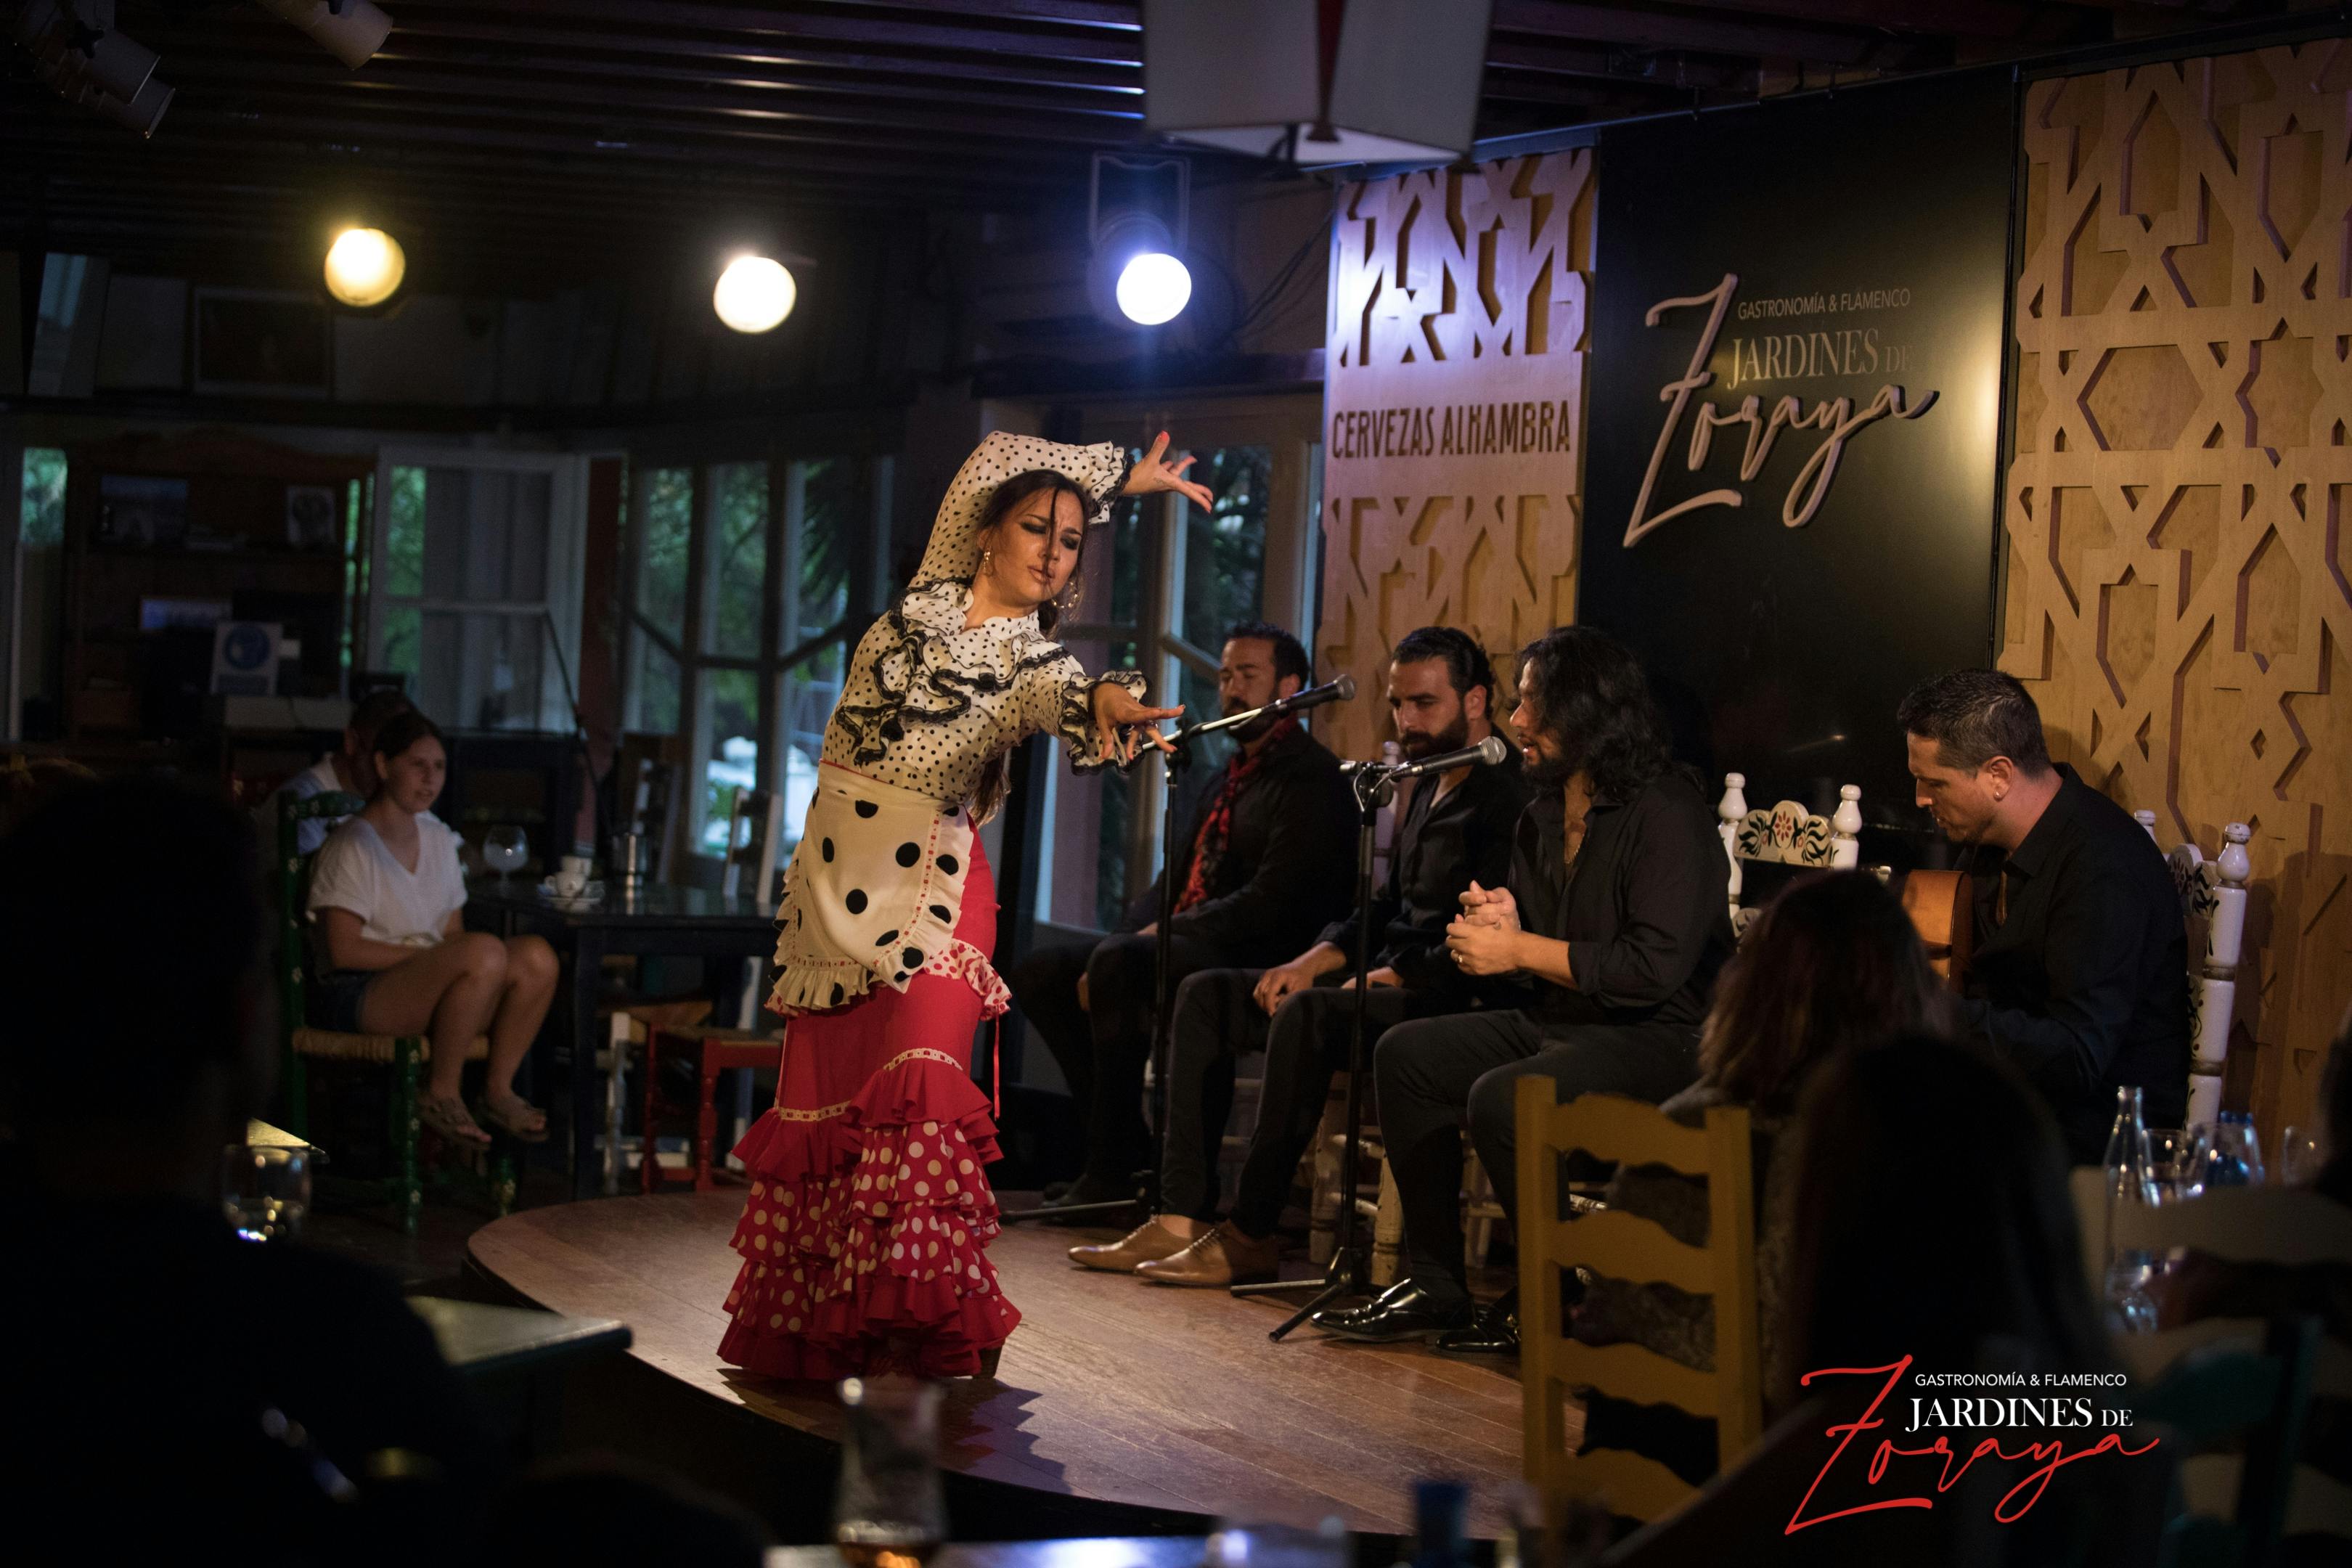 Tickets for flamenco show at the Jardines de Zoraya